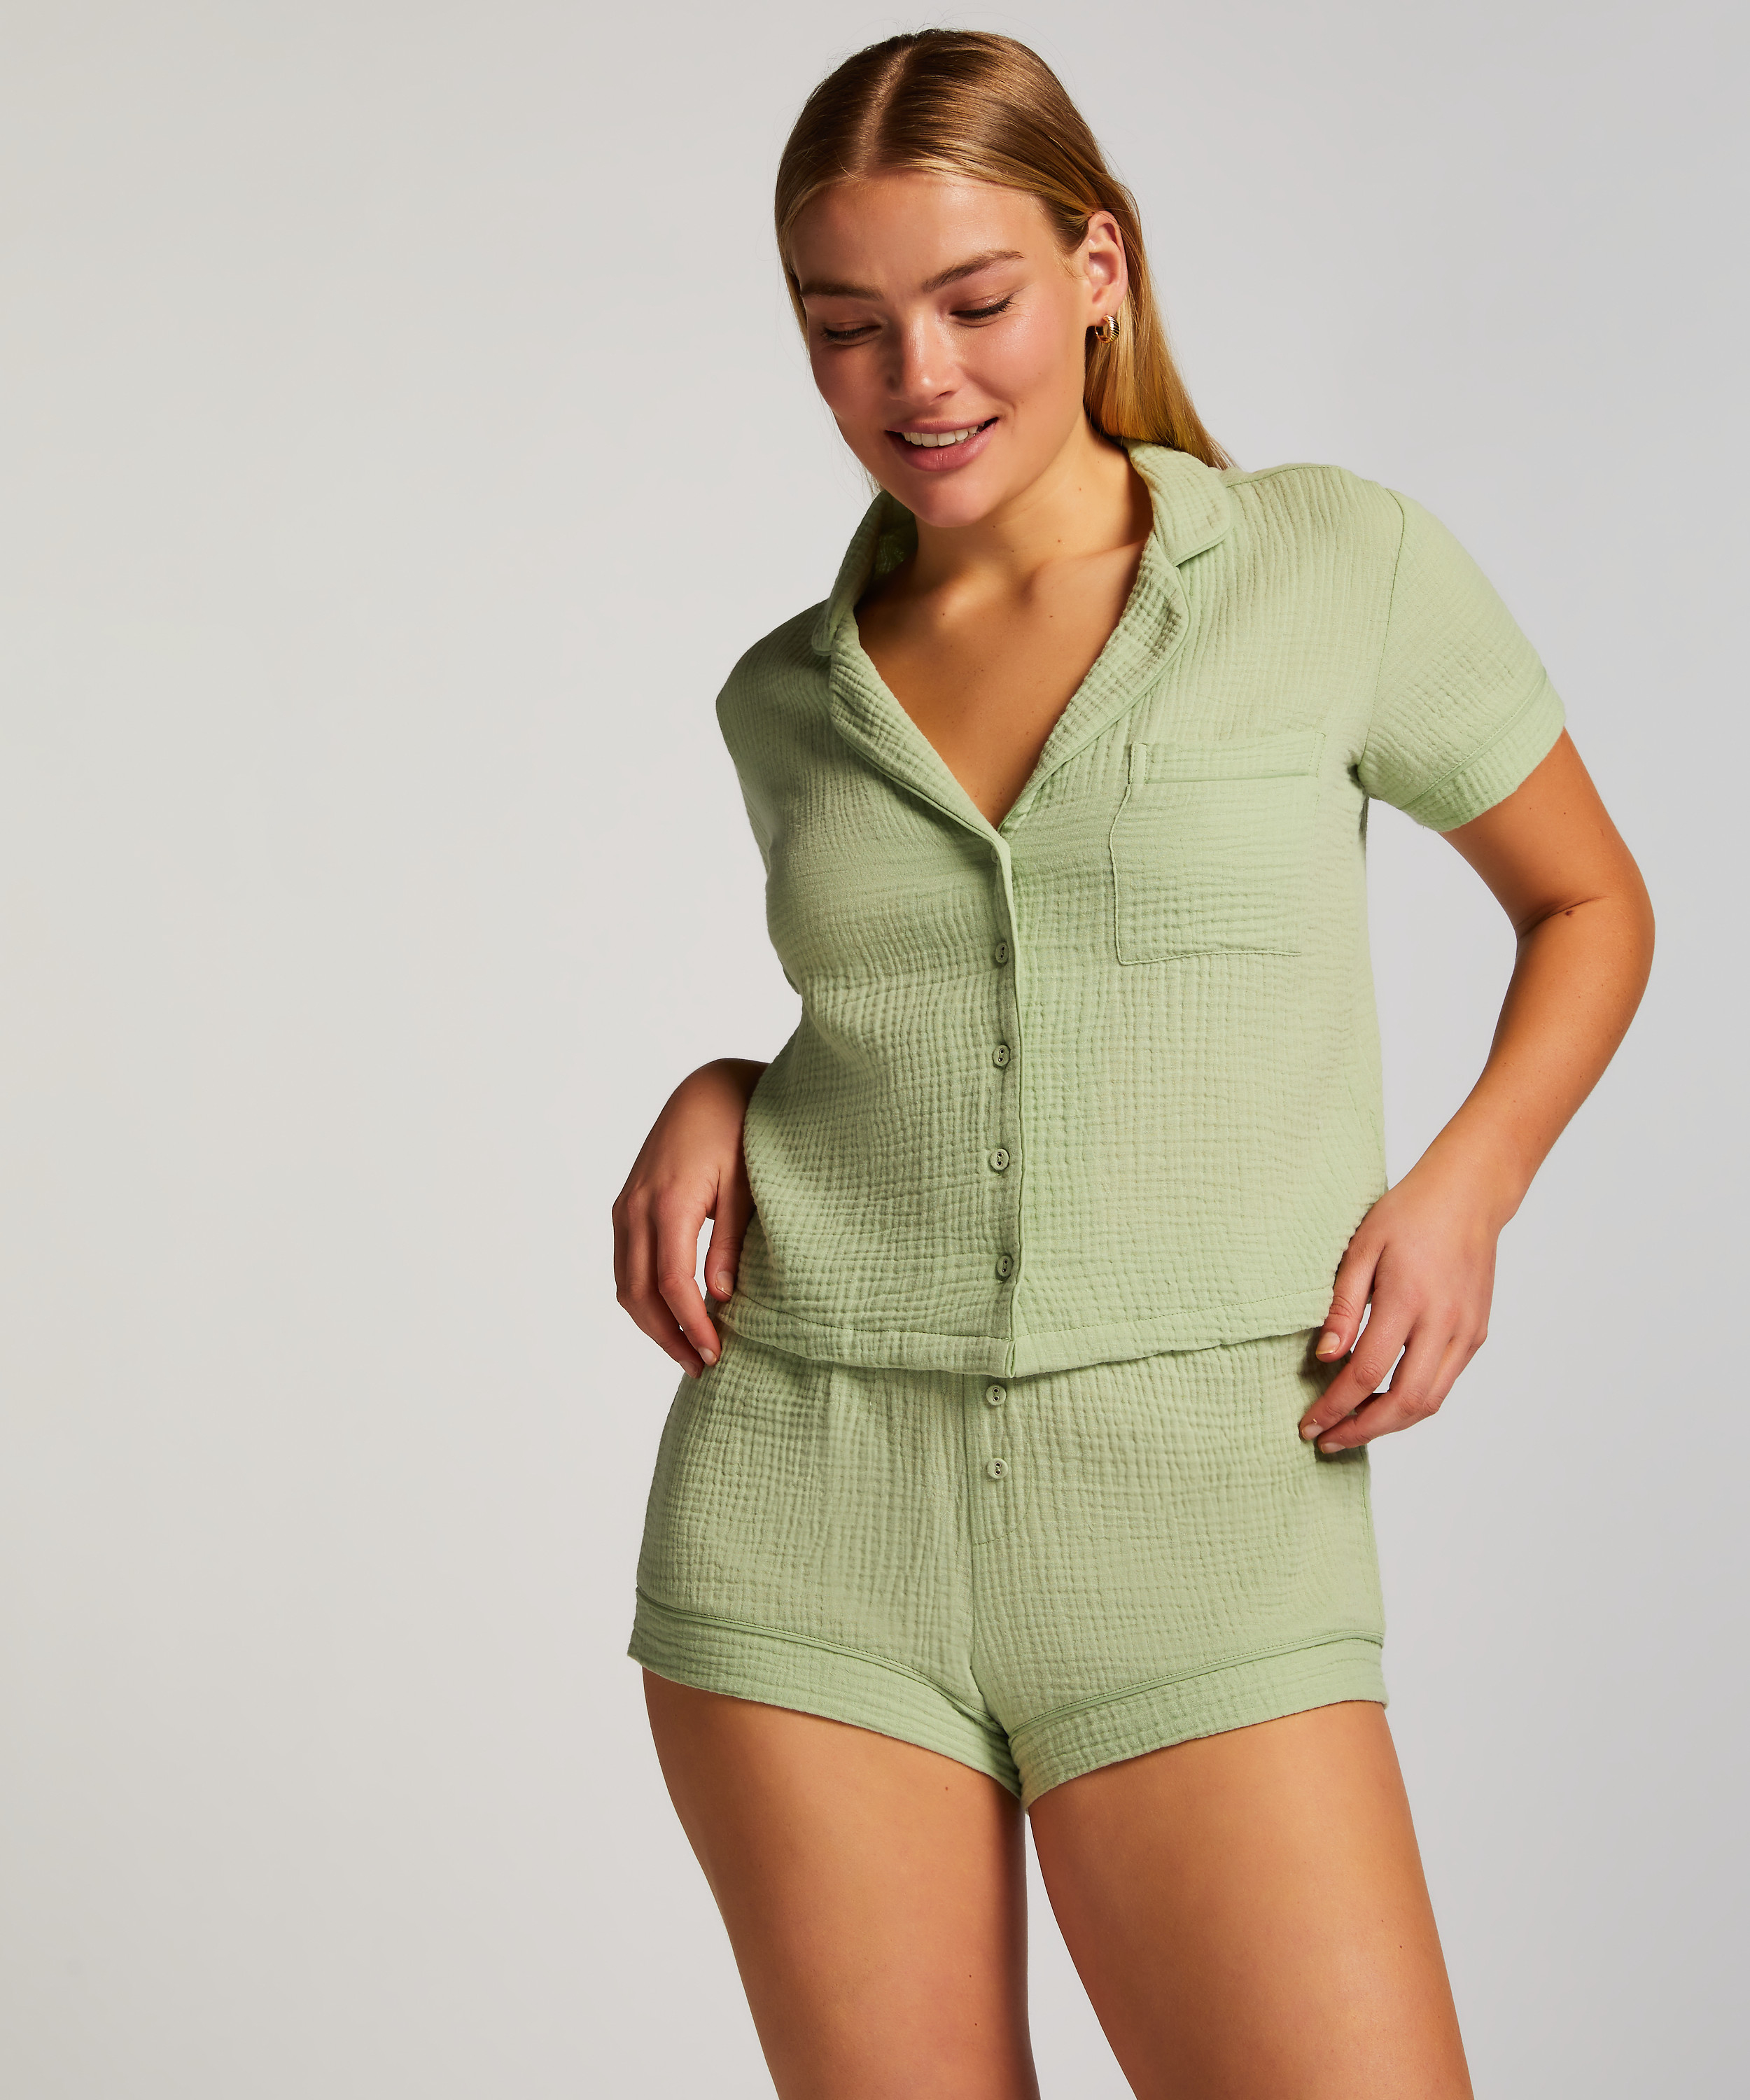 Pyjamastopp Springbreakers, grön, main